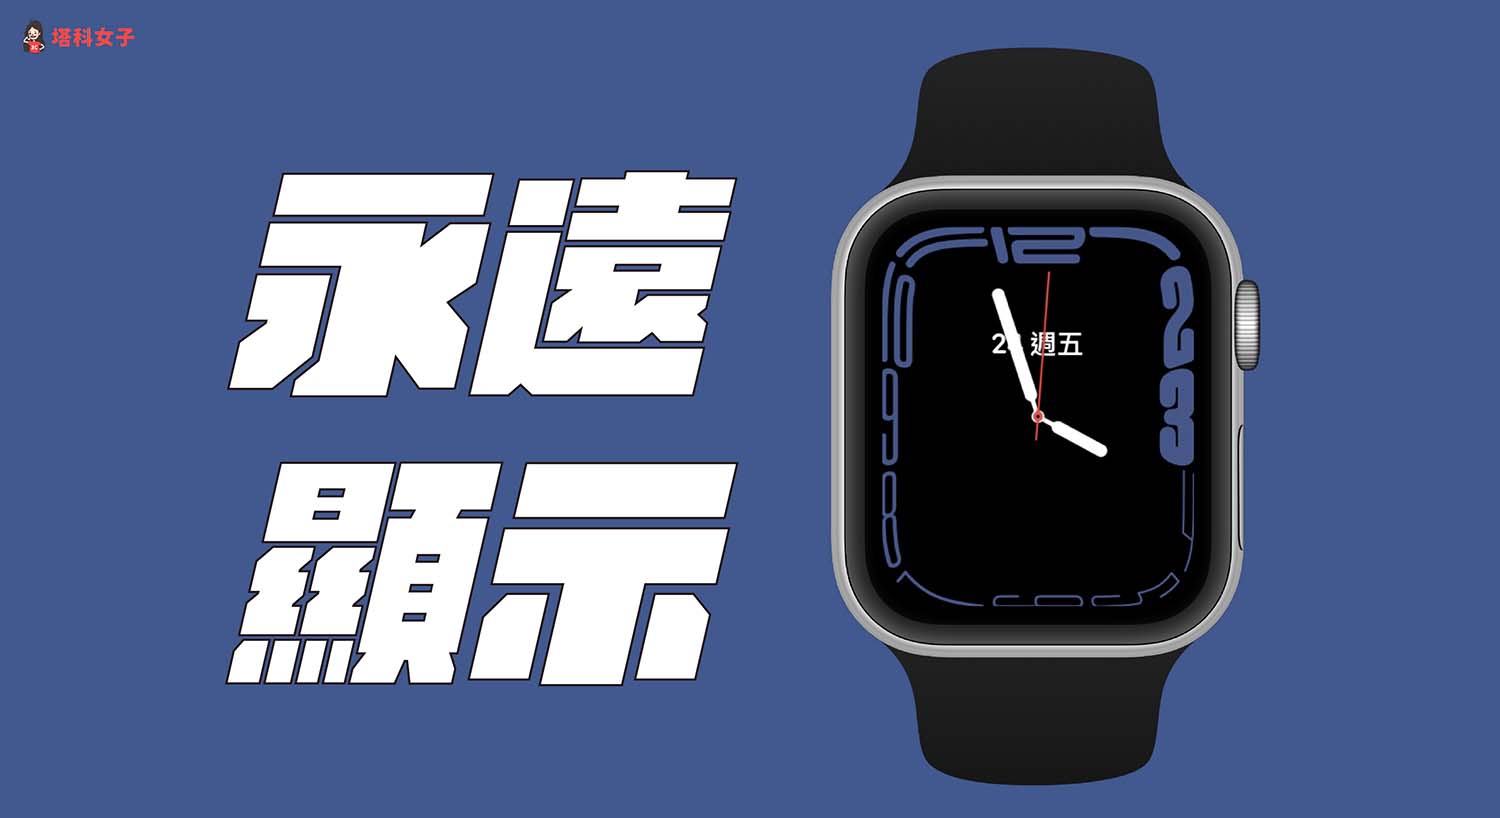 Apple Watch 永遠顯示怎麼用？教你設定隨顯螢幕、喚醒時間